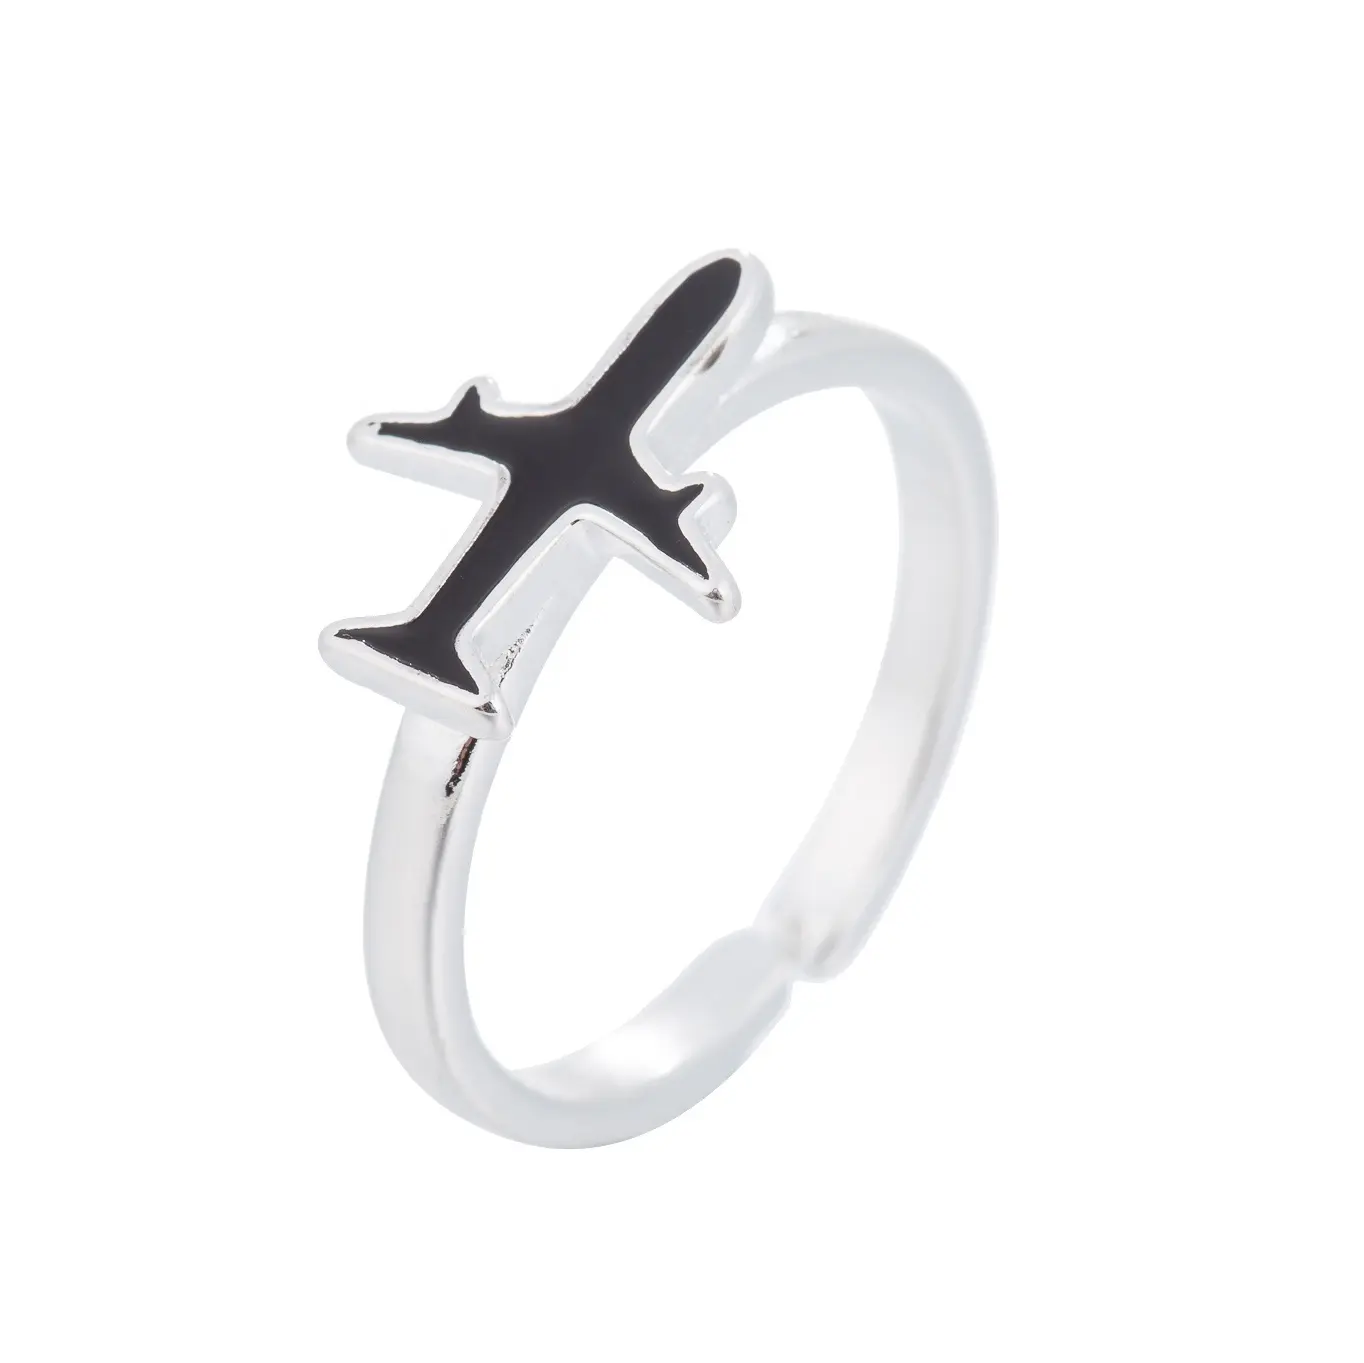 クラシック925スターリングシルバーシンプルな飛行機リングジュエリーオープニングための調節可能な女性のギフト指輪